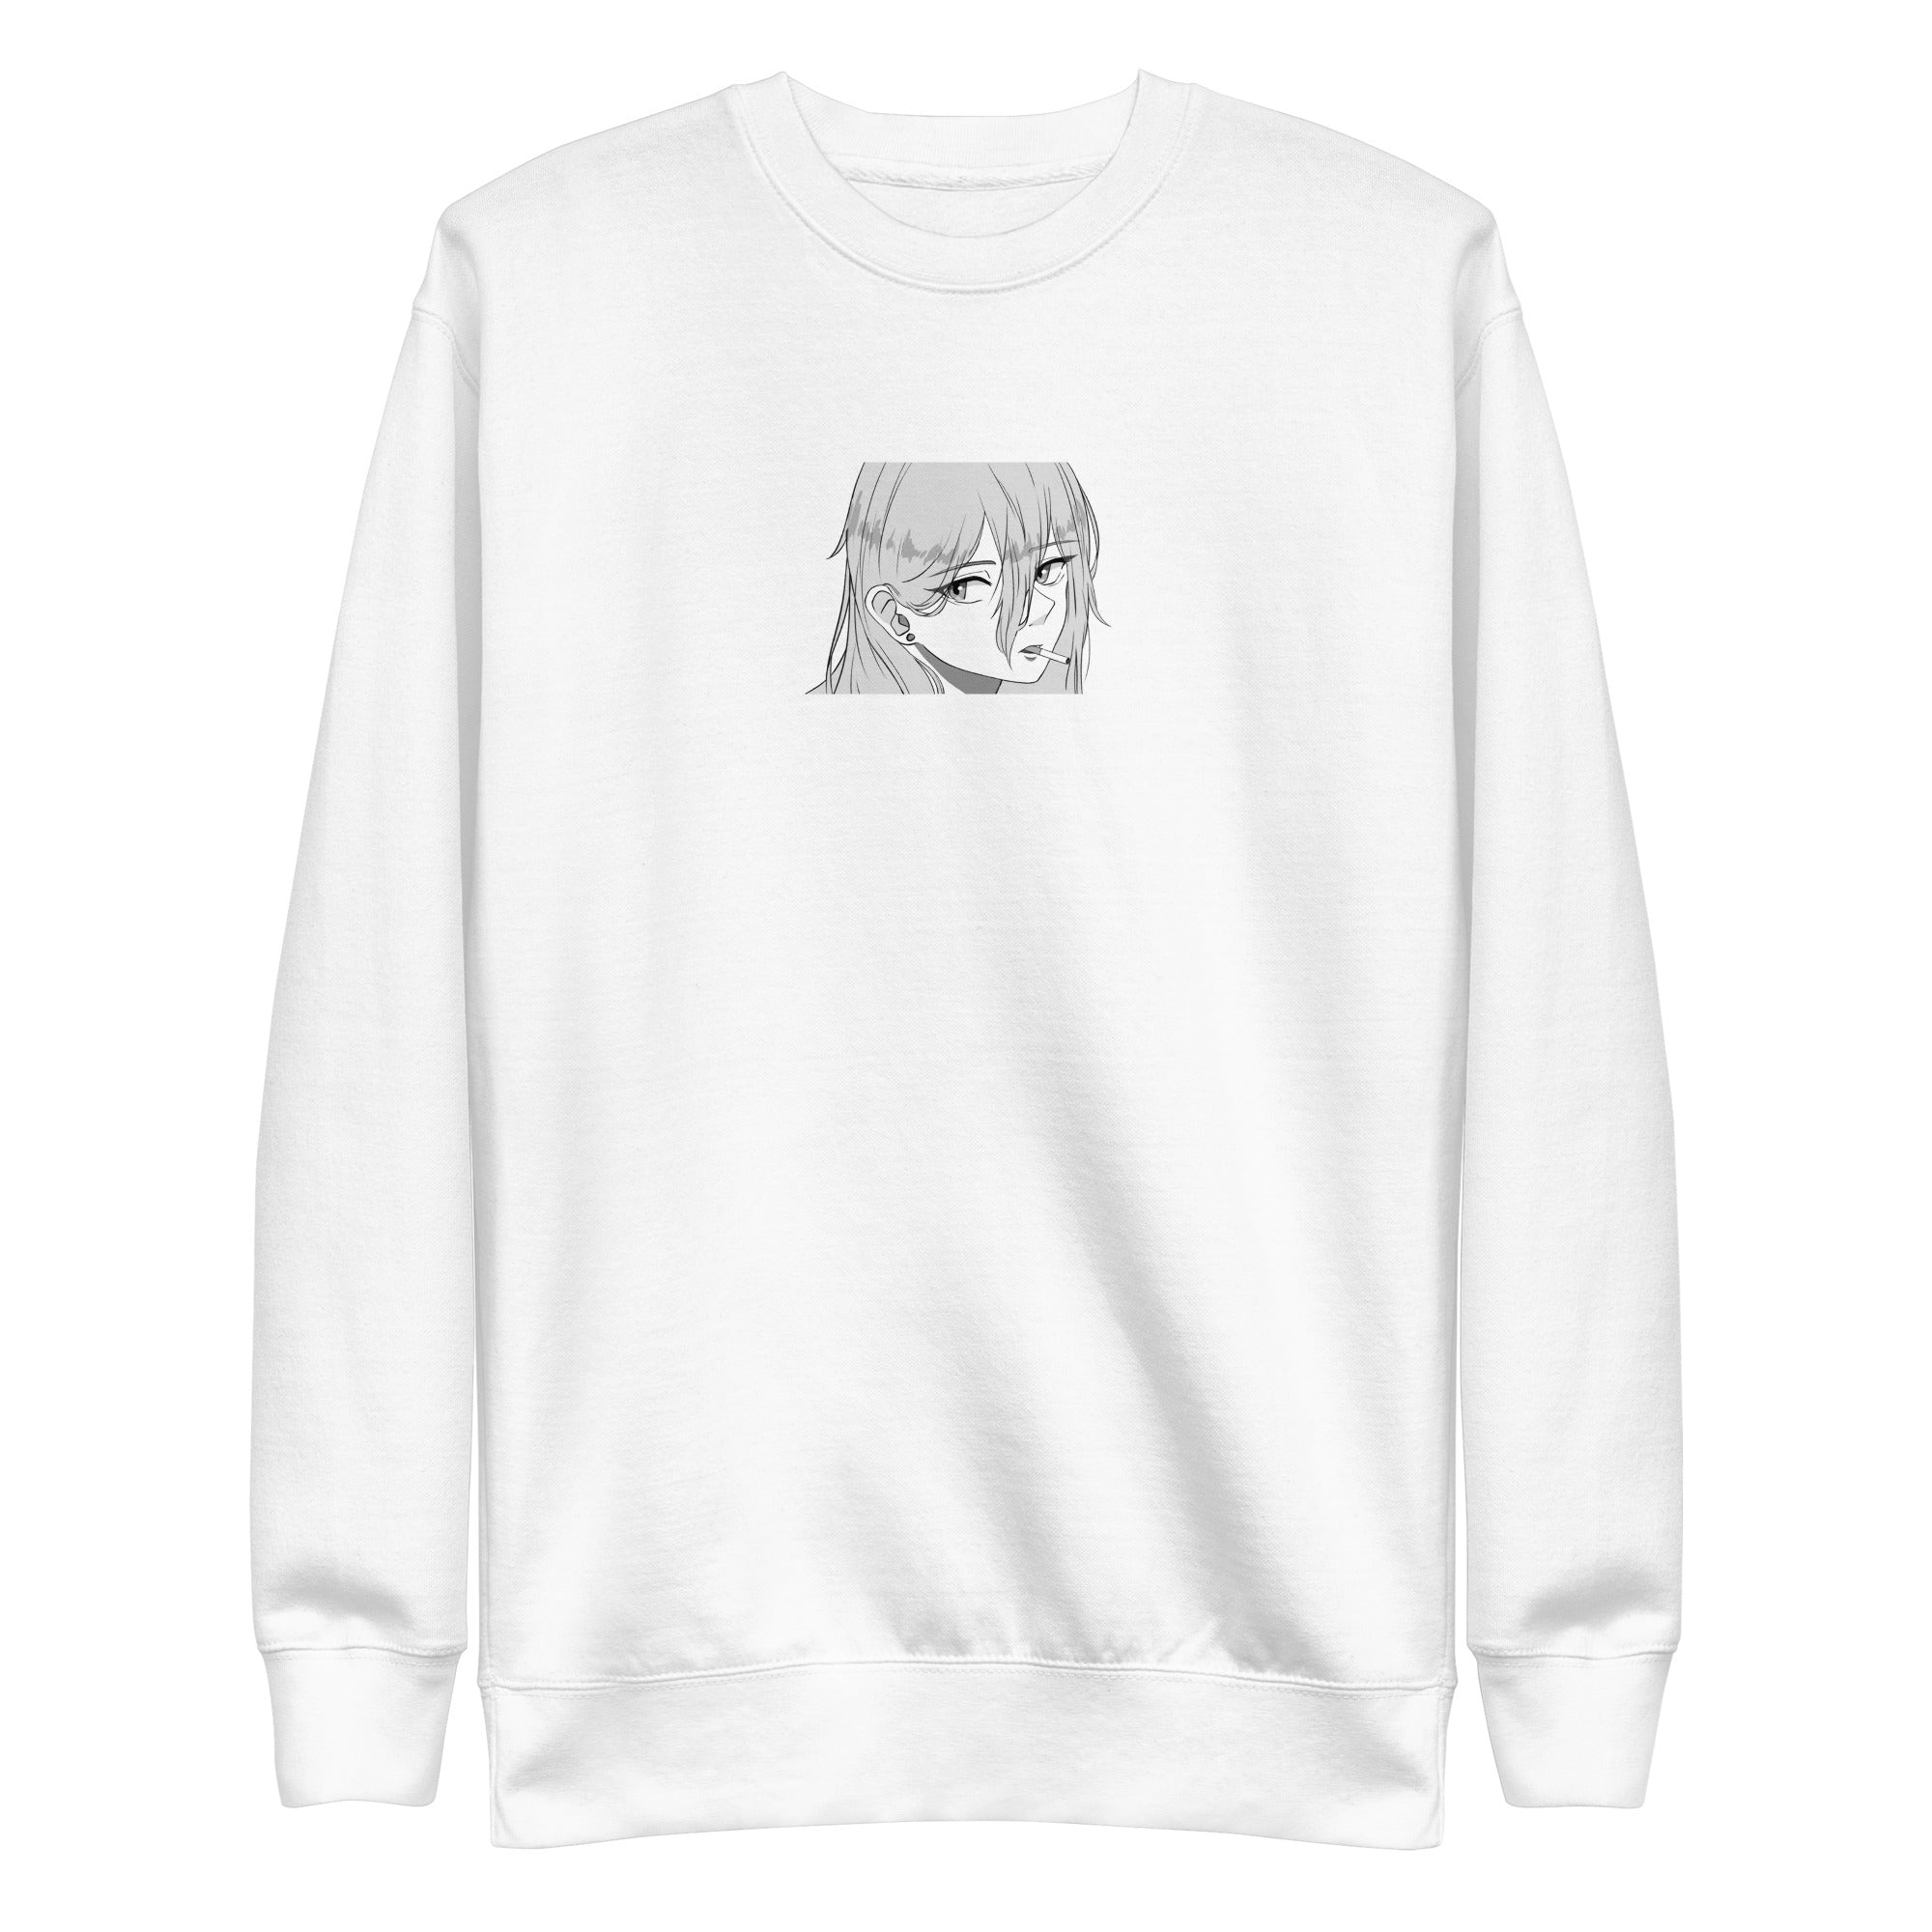 Smoke • anime sweatshirt - Jackler - anime-inspired streetwear - anime clothing